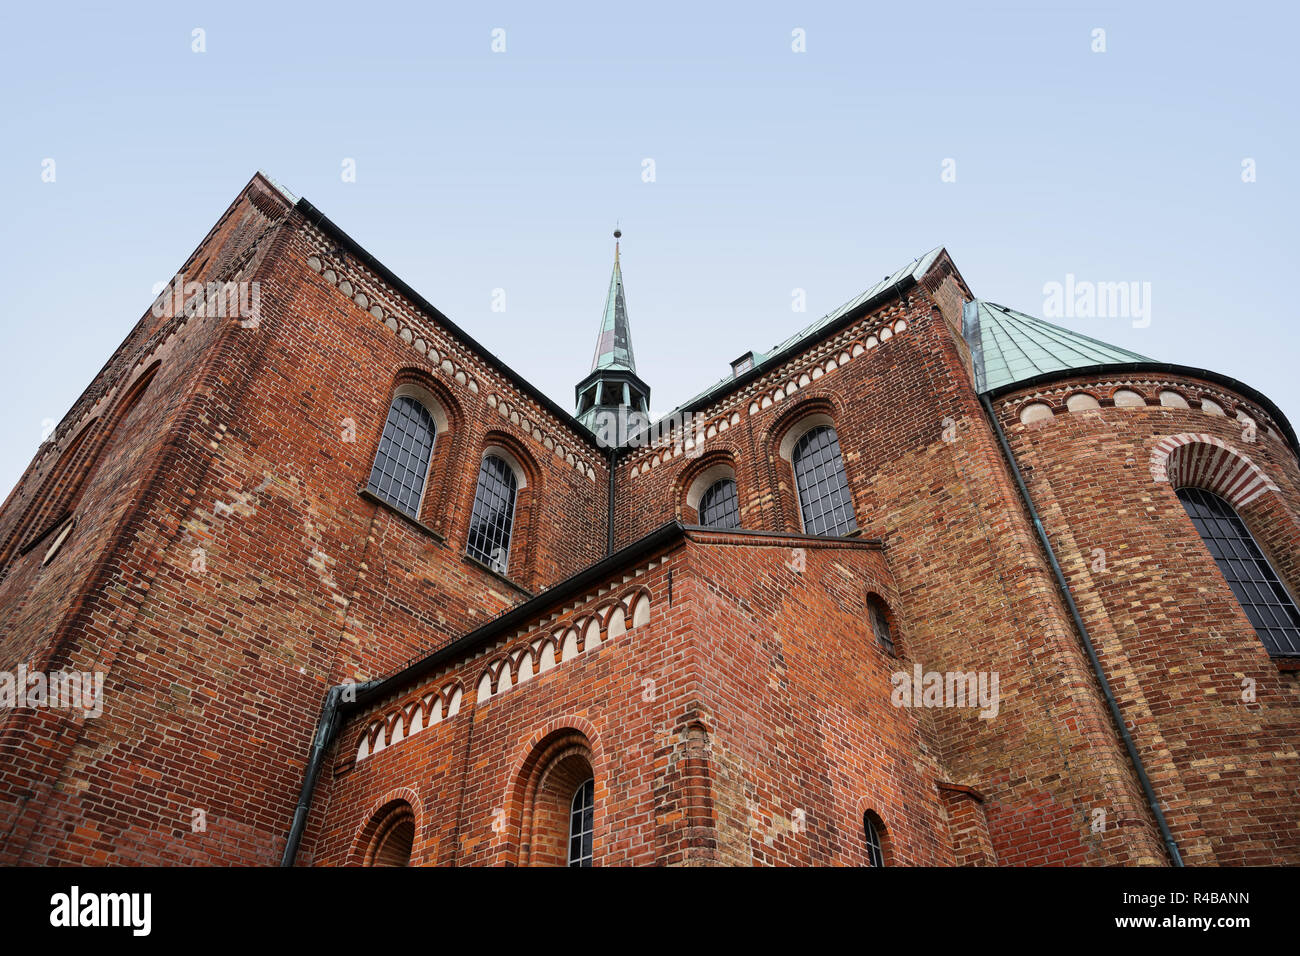 Ratzeburger Dom, Rückseite der Kathedrale mit der Dachreiter in typischen Backsteinarchitektur in Norddeutschland, kopieren Raum Stockfoto